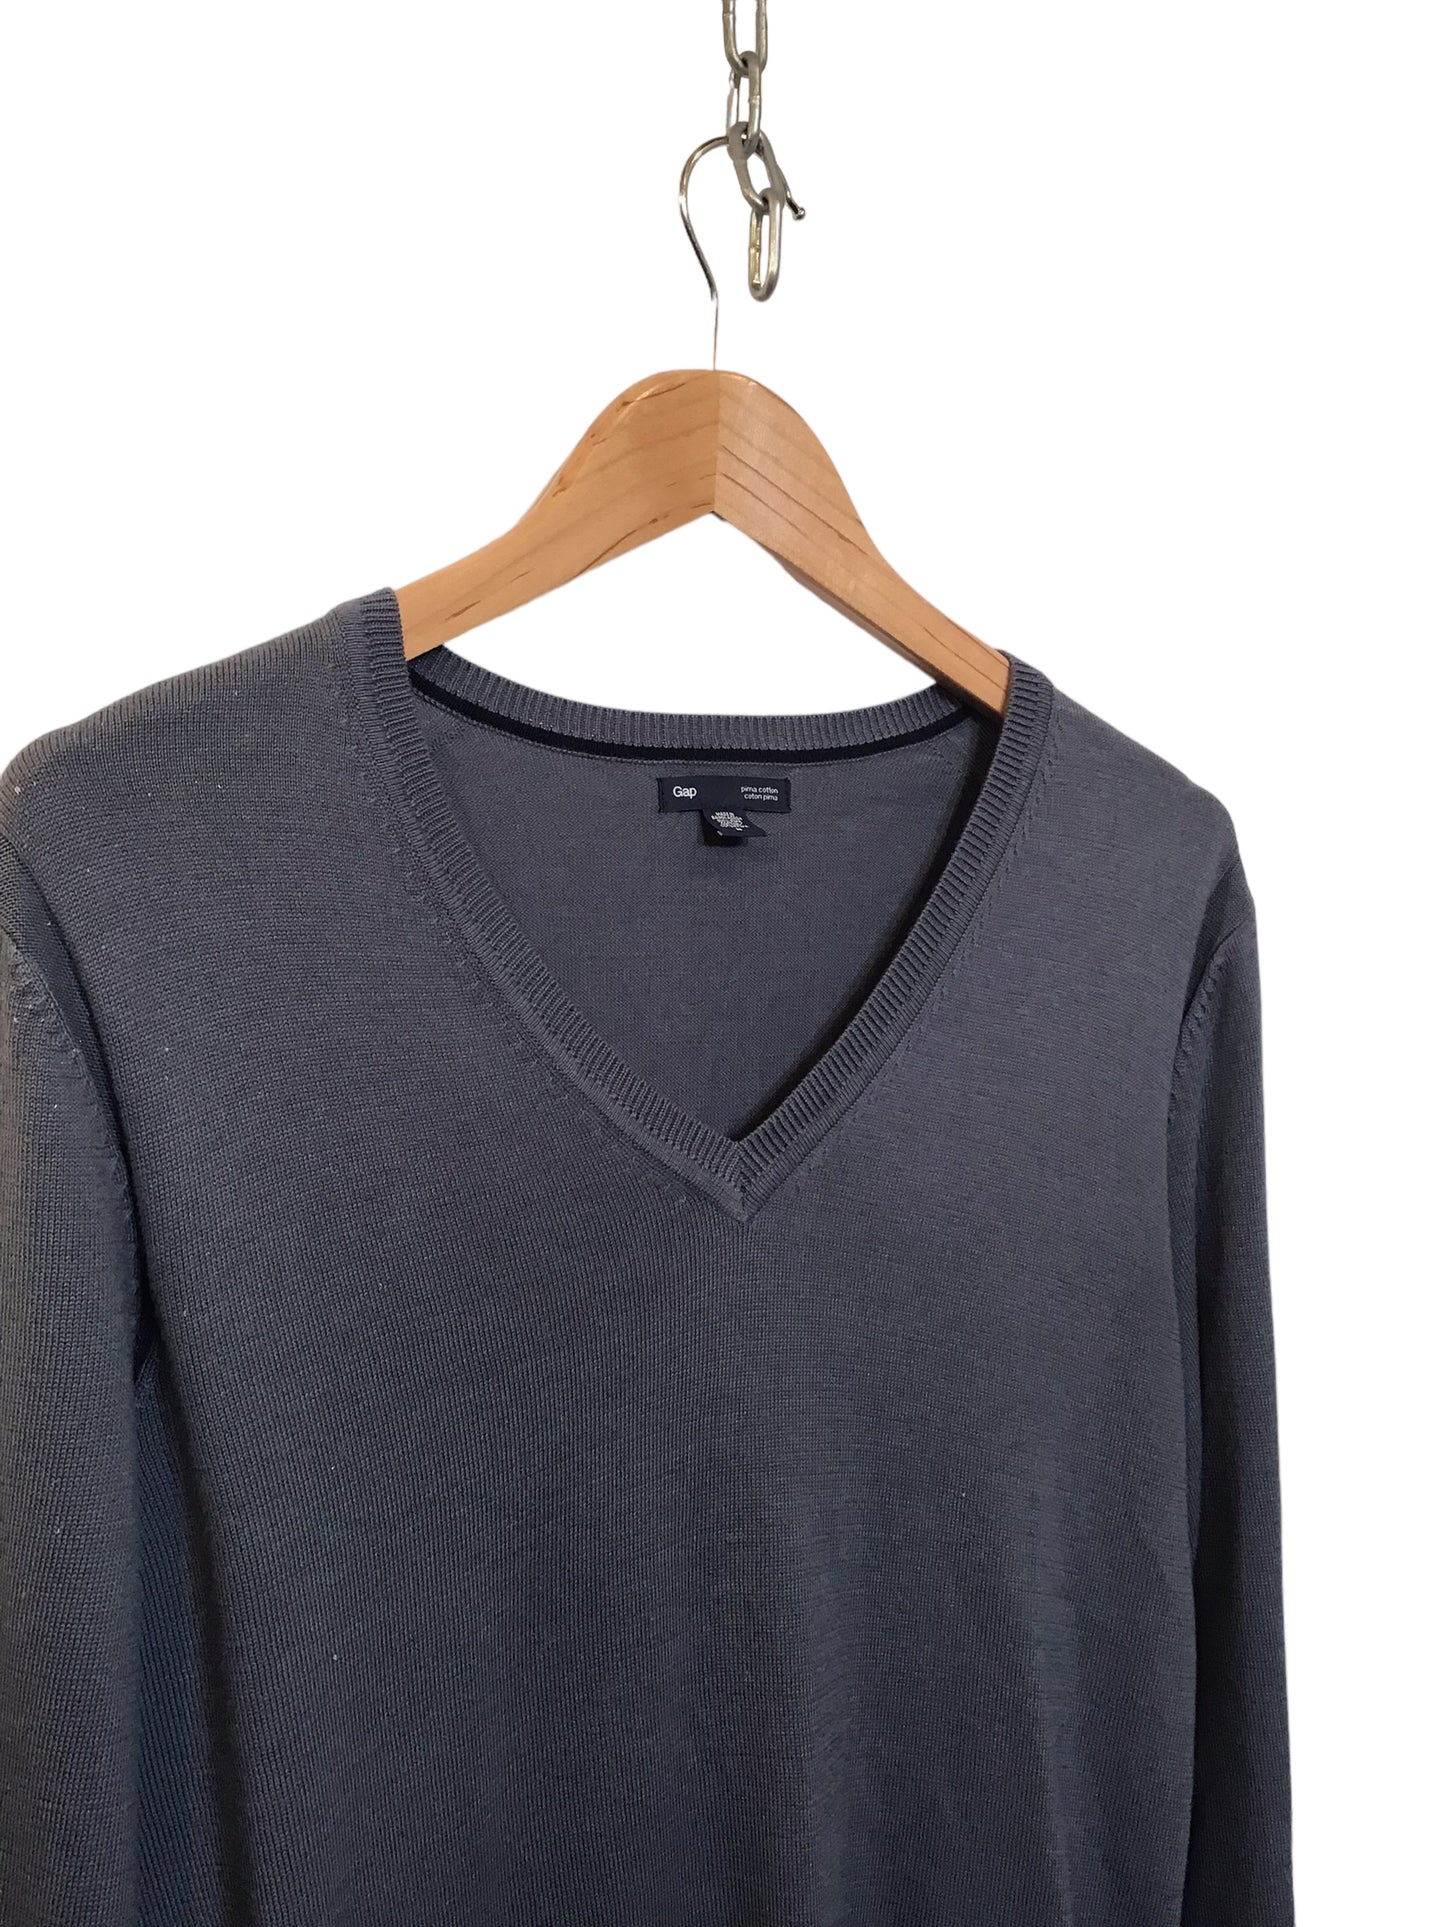 Gap V-Neck Sweater (Size M)